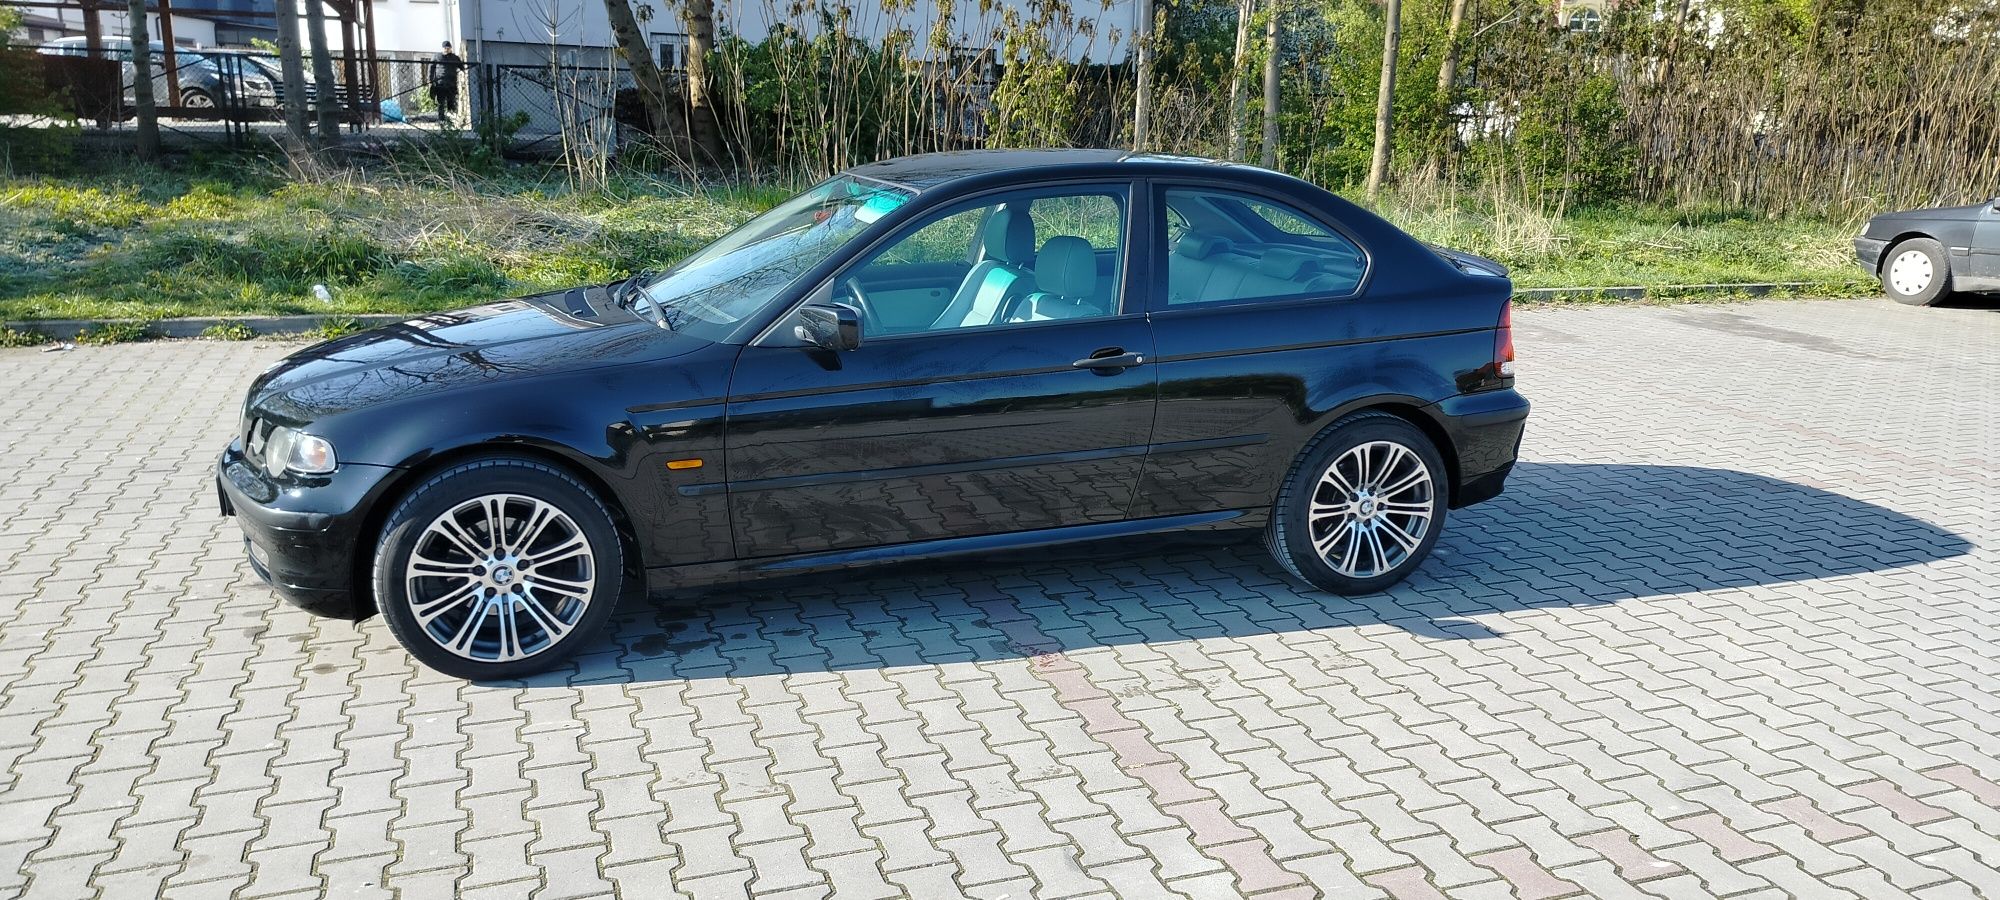 BMW E46 1.8 compact